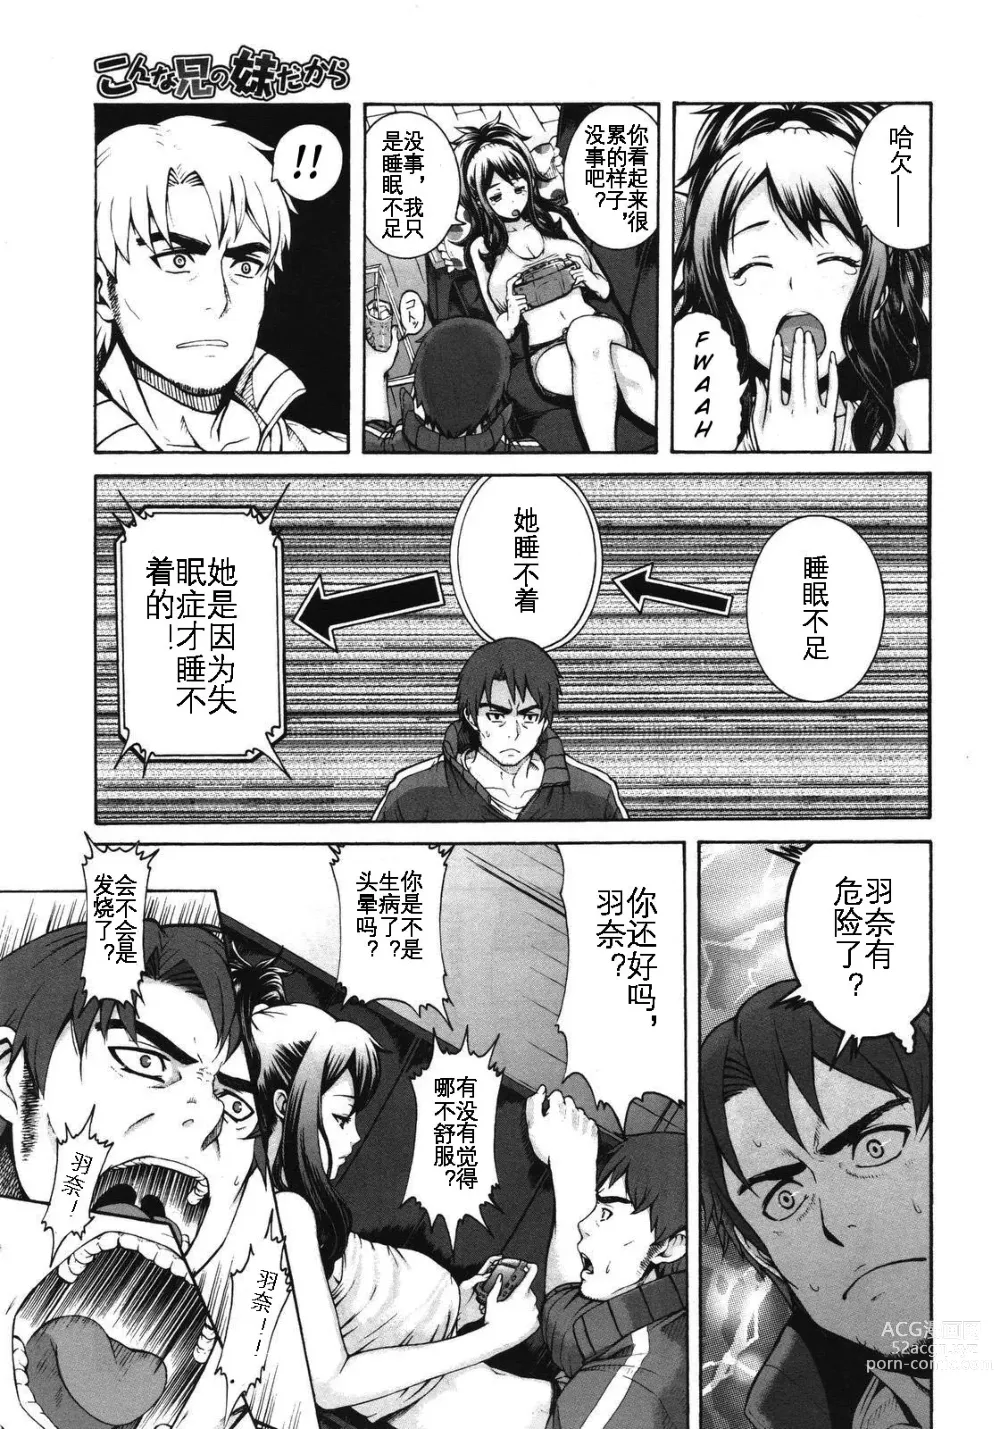 Page 4 of manga Konna Ani no Imouto Dakara   Animoca